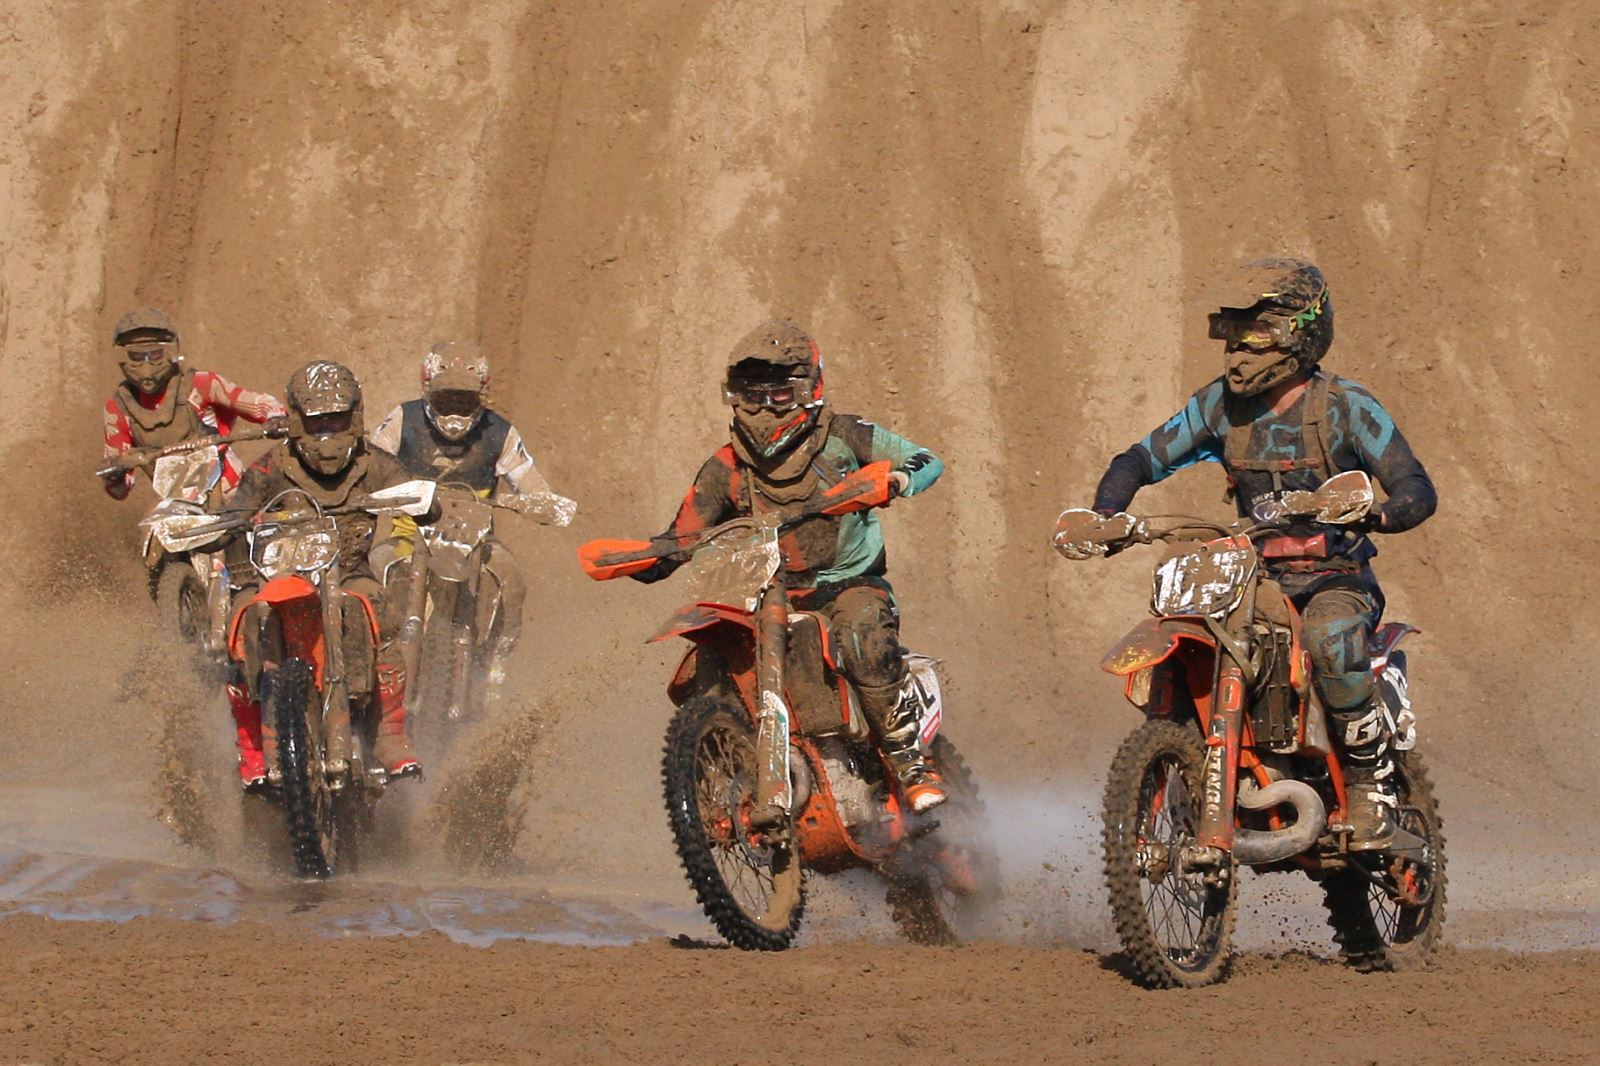 Motocross riders in a sandy beach motorbike race